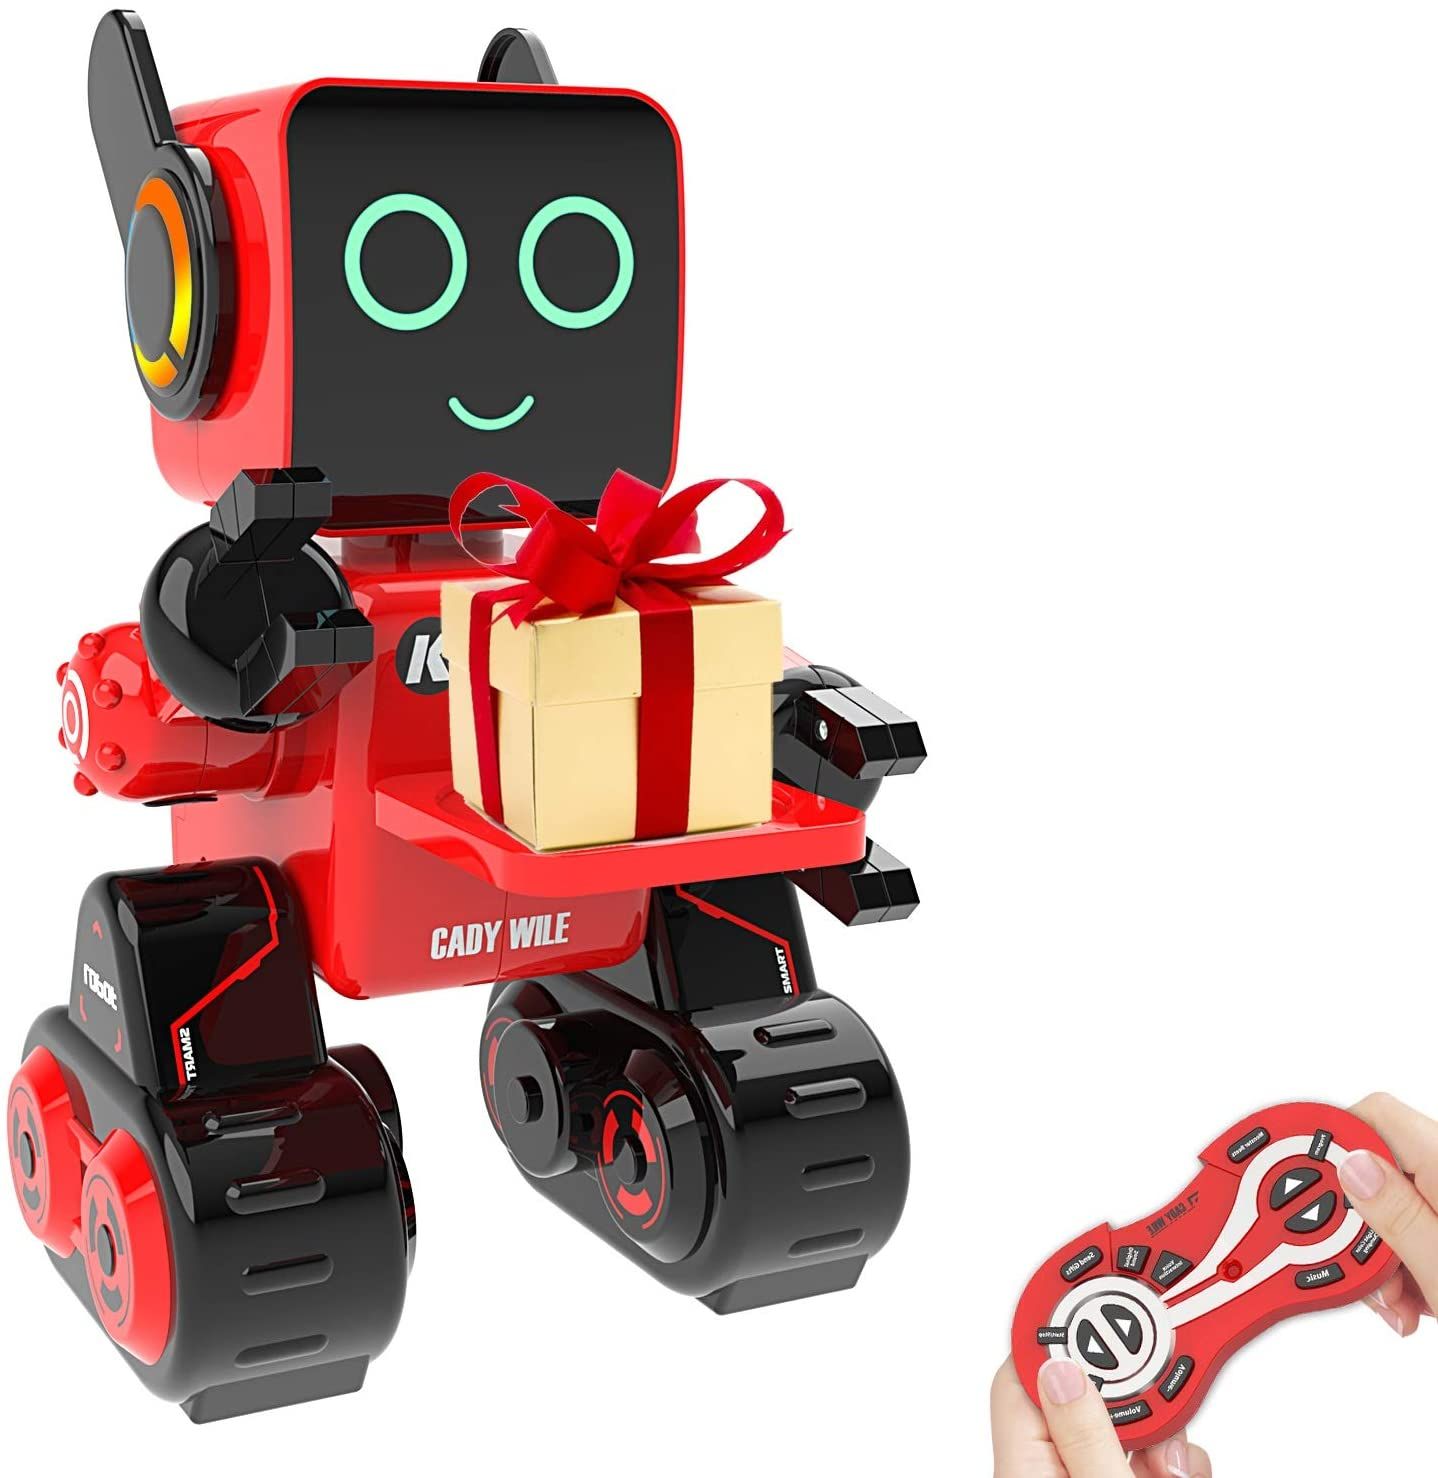 Kinder robot. Toys for Kids Robot.